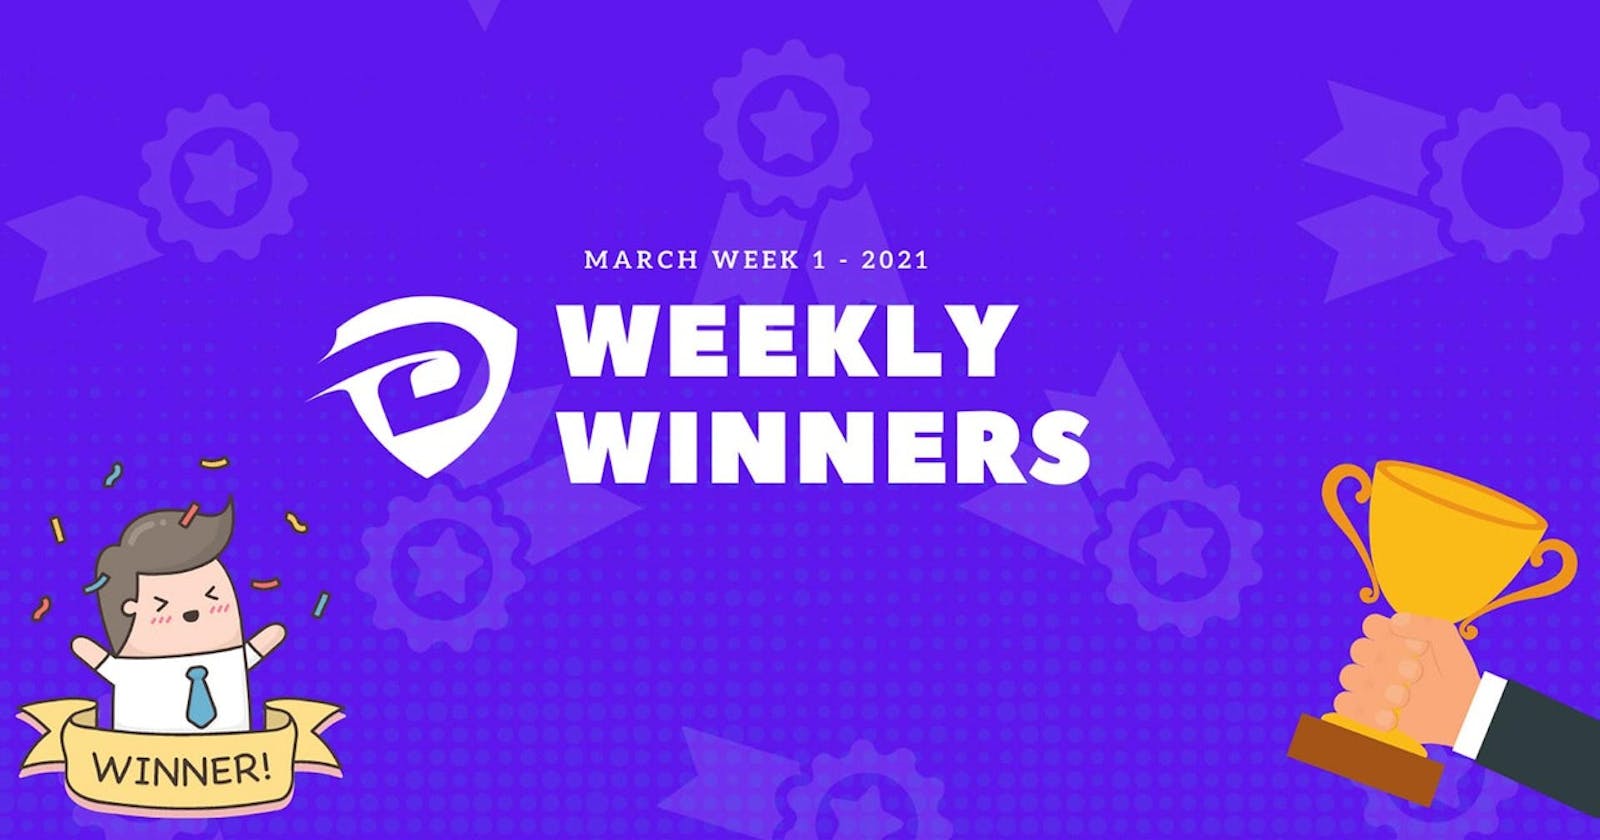 DevDojo Weekly Winners Week 1 March 2021